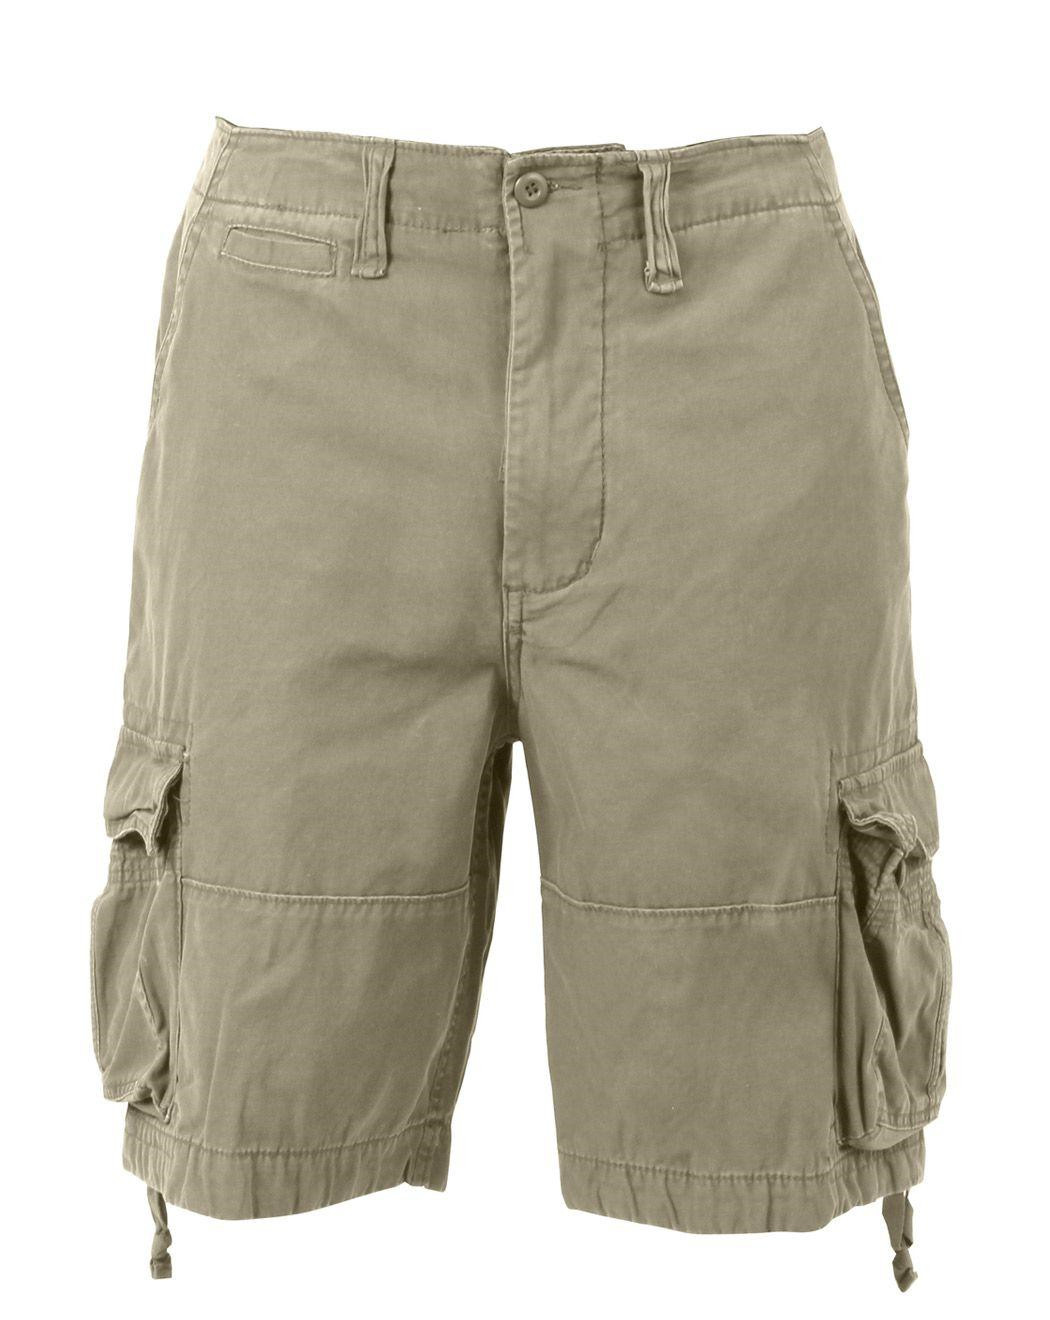 Rothco Vintage Infantry Shorts (Khaki, XL)